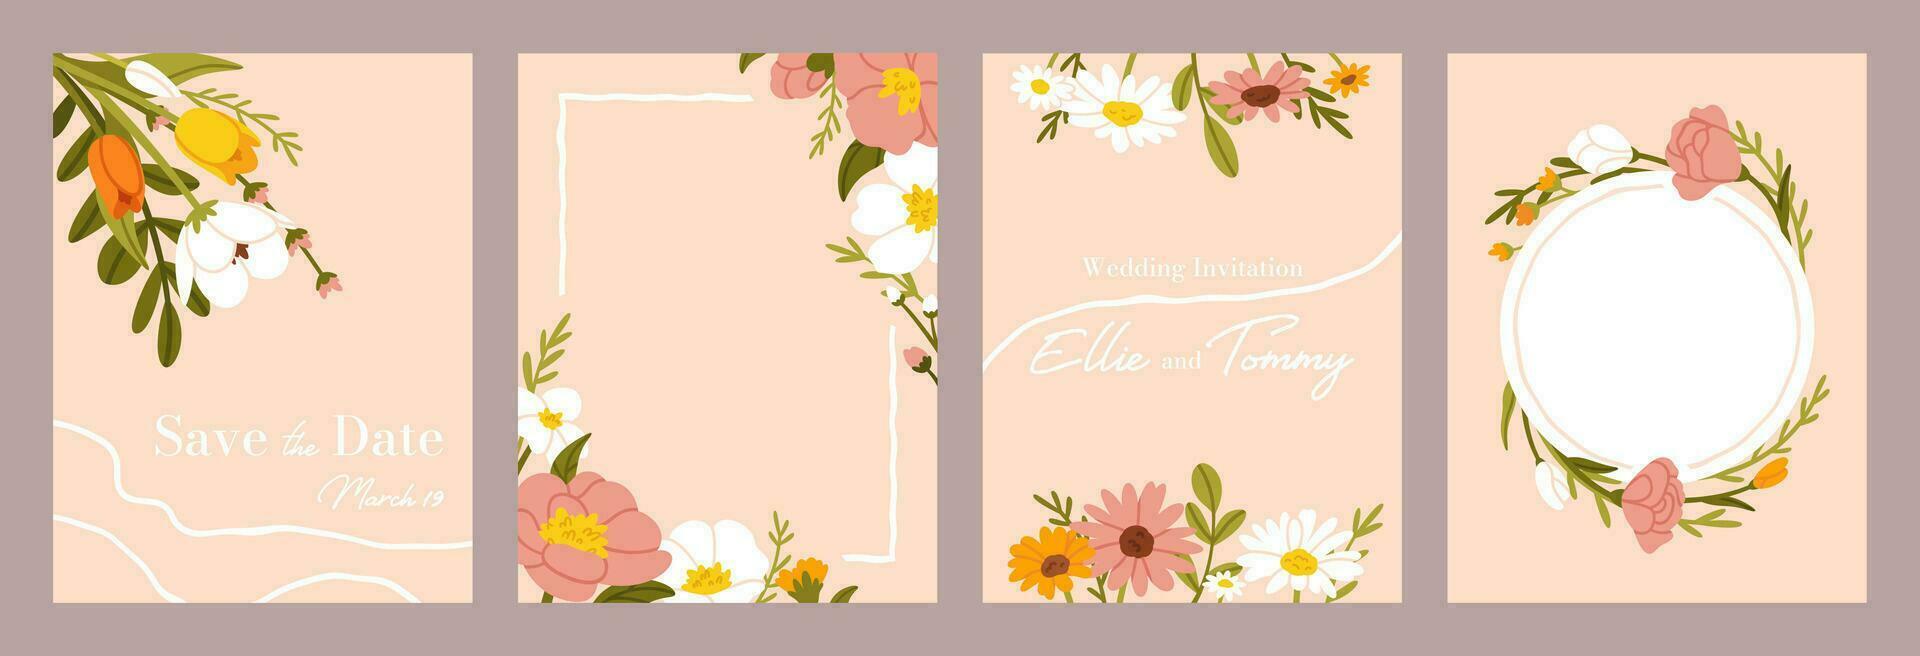 Boda flor póster. tarjeta con primavera flores para Boda invitación, decorativo saludo floral tarjetas con flores silvestres ramo. vector volantes plantillas conjunto